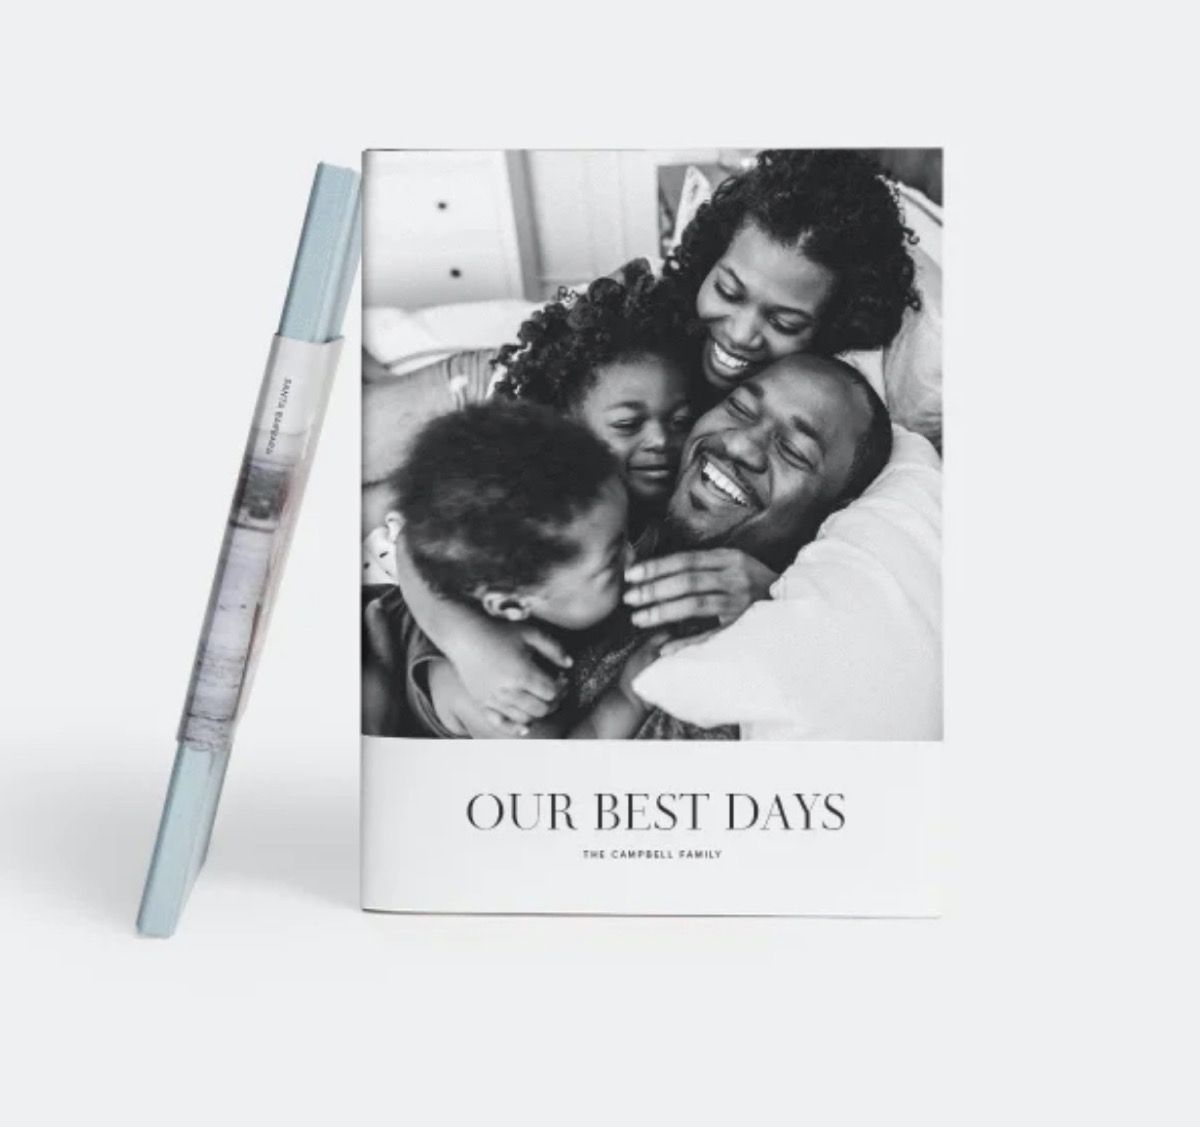 fotobog med smilende sort familie i sort / hvid foto på omslag